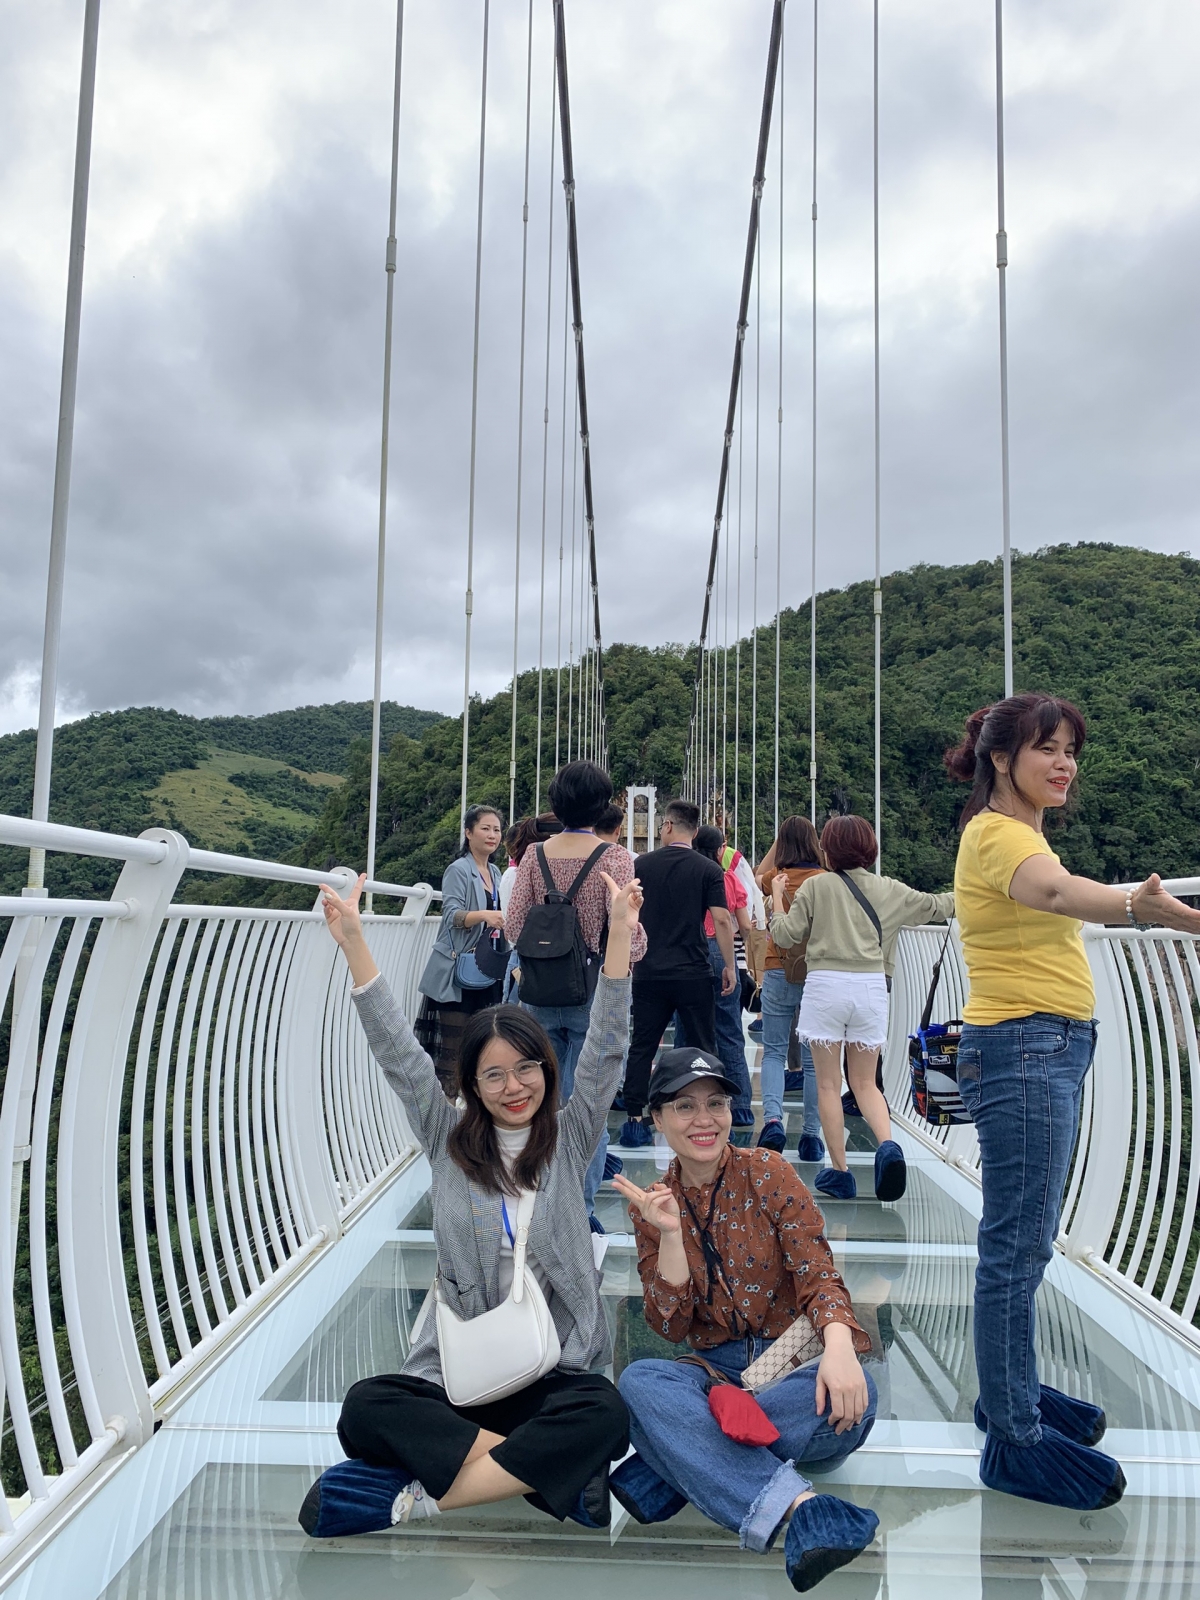 Du khách thích thú khi được trải nghiệm đi bộ trên cầu 